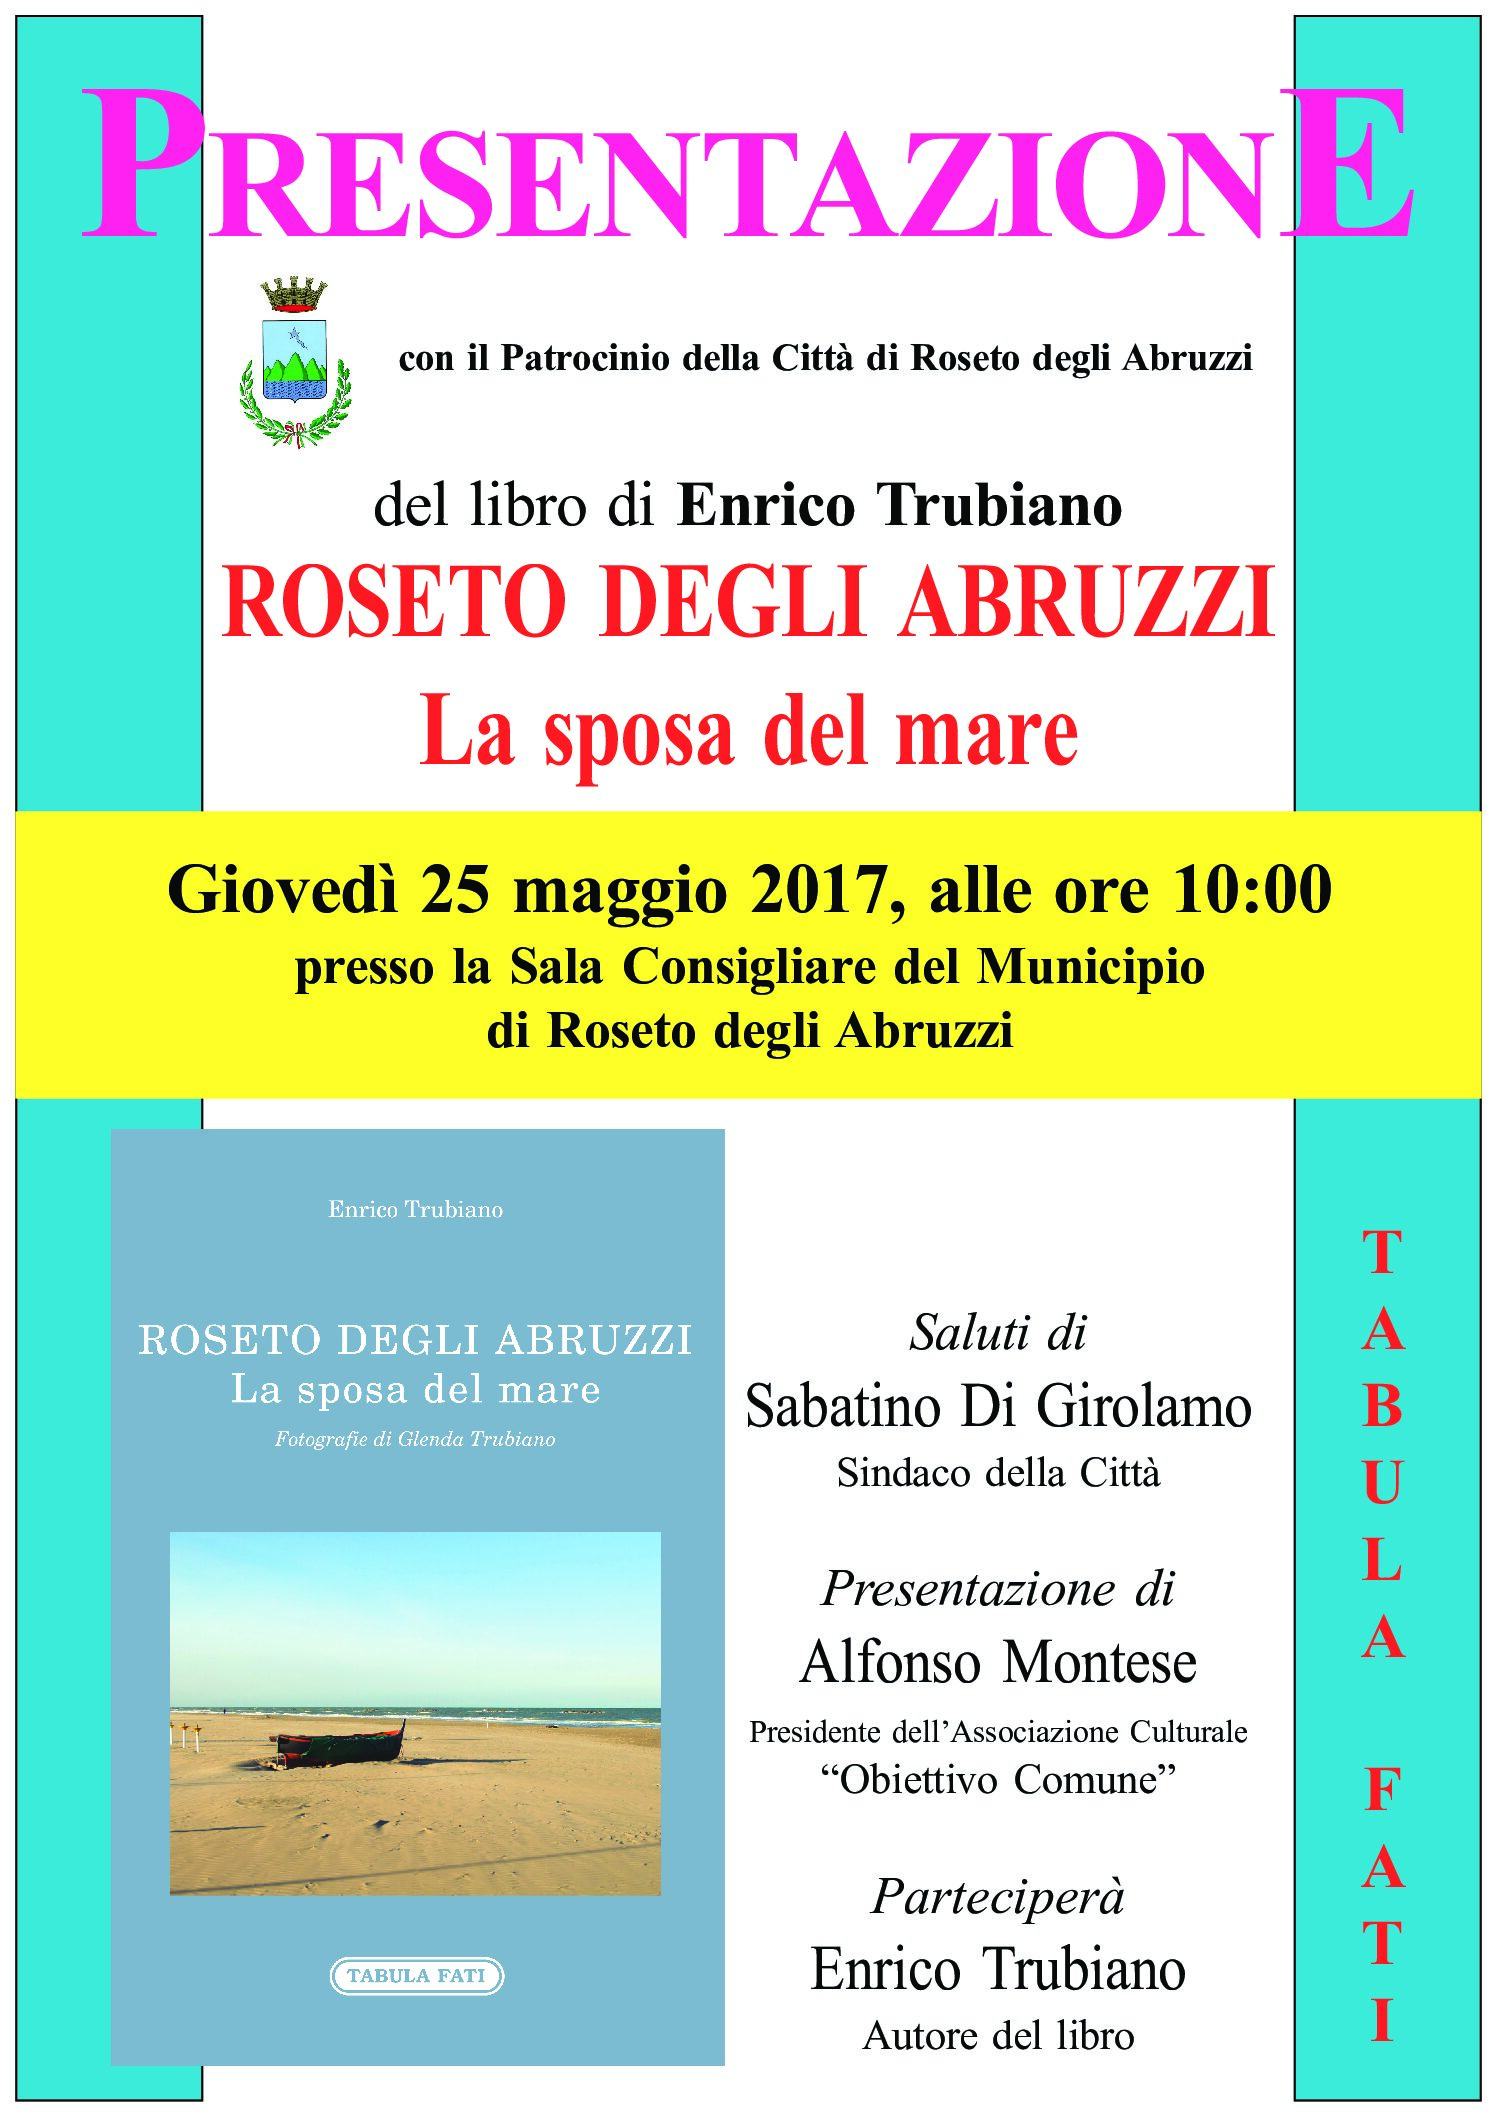 Editoria.Il nuovo libro di Enrico Trubiano “Roseto degli Abruzzi – La Sposa del Mare”. Domani presentazione